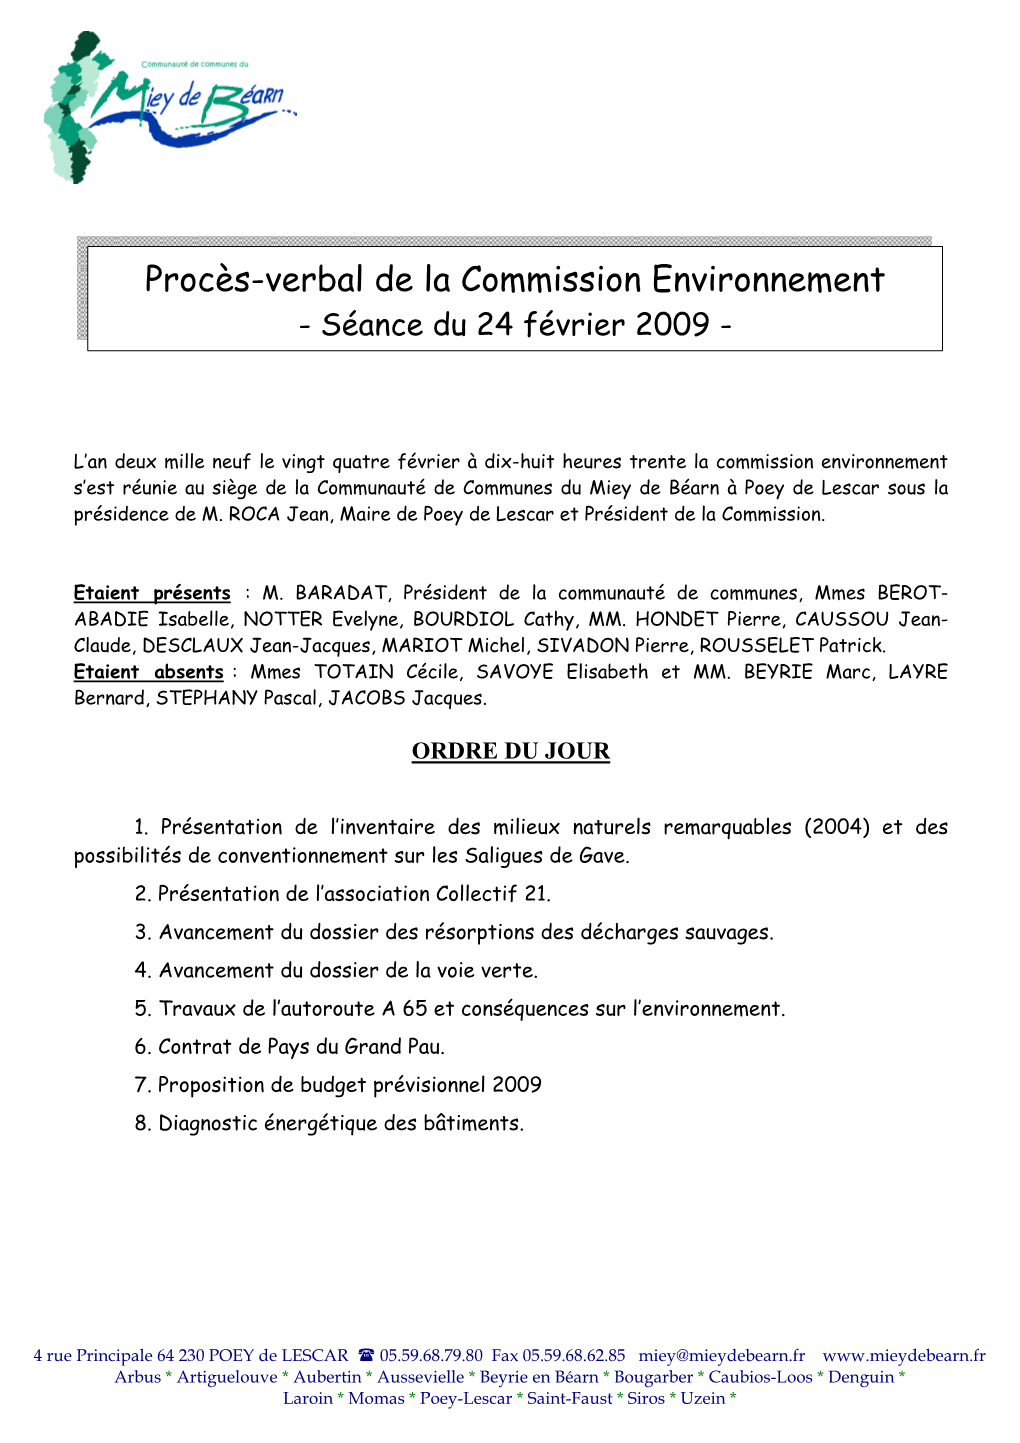 Procès-Verbal De La Commission Environnement - Séance Du 24 Février 2009